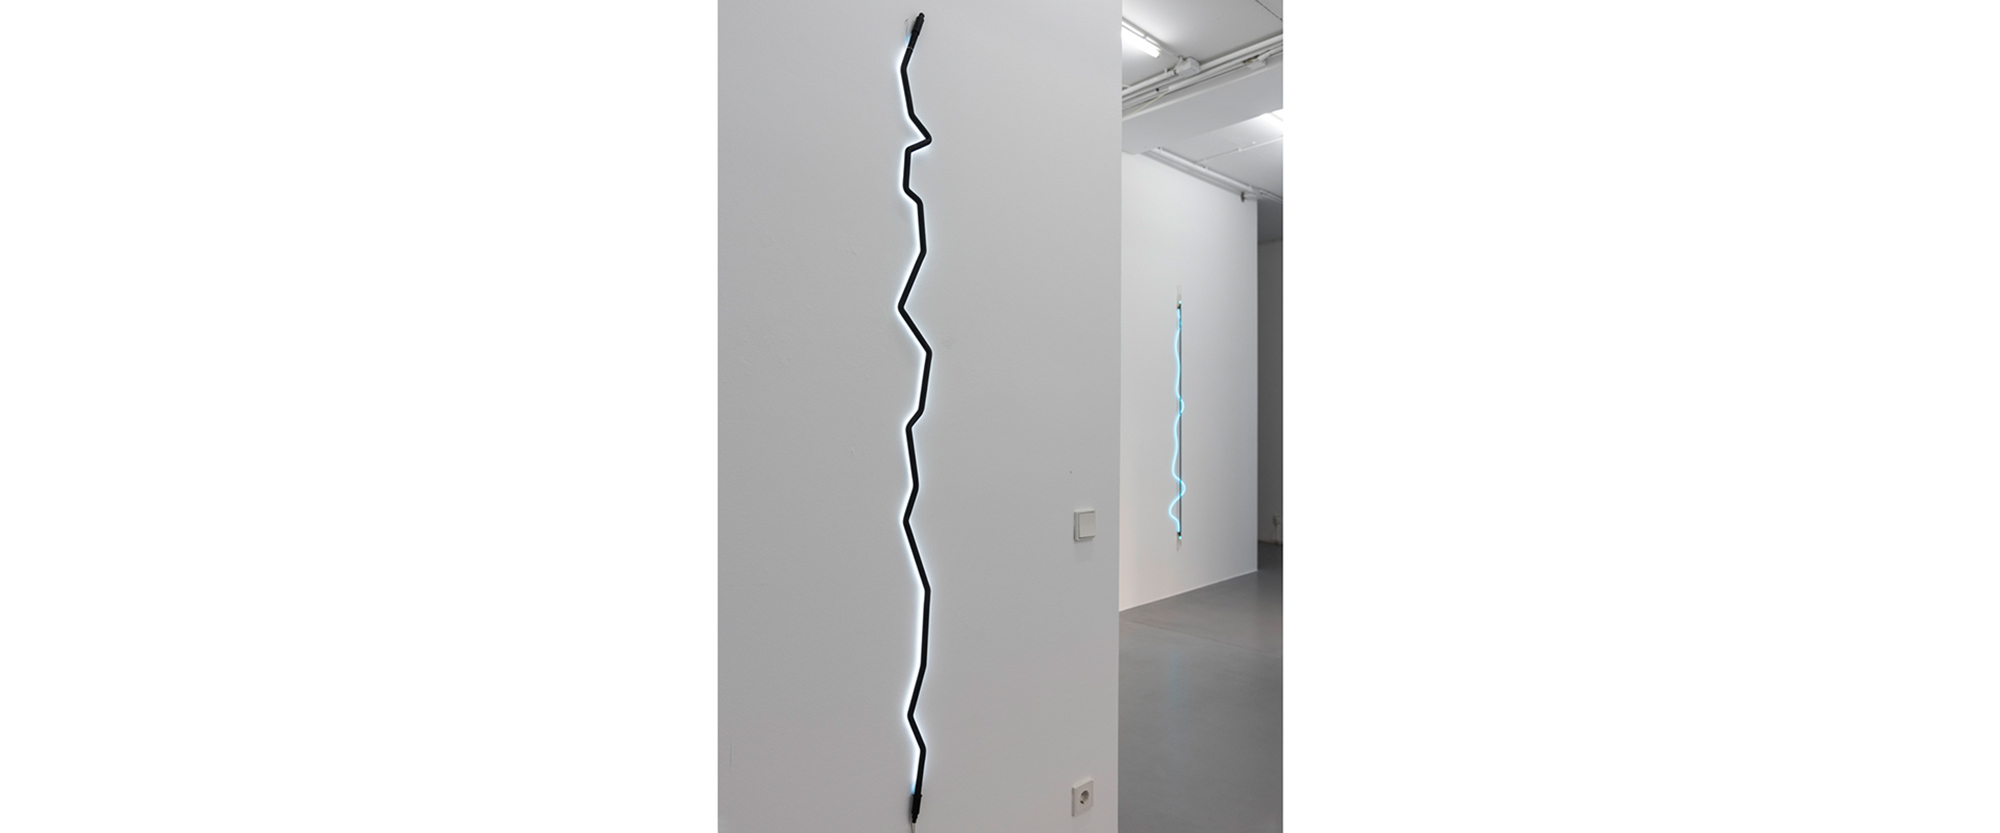 Ausstellungsansicht "Between Dark and Light. Inge Dick & Jan van Munster", Galerie Renate Bender 2018. Foto: M. Heyer